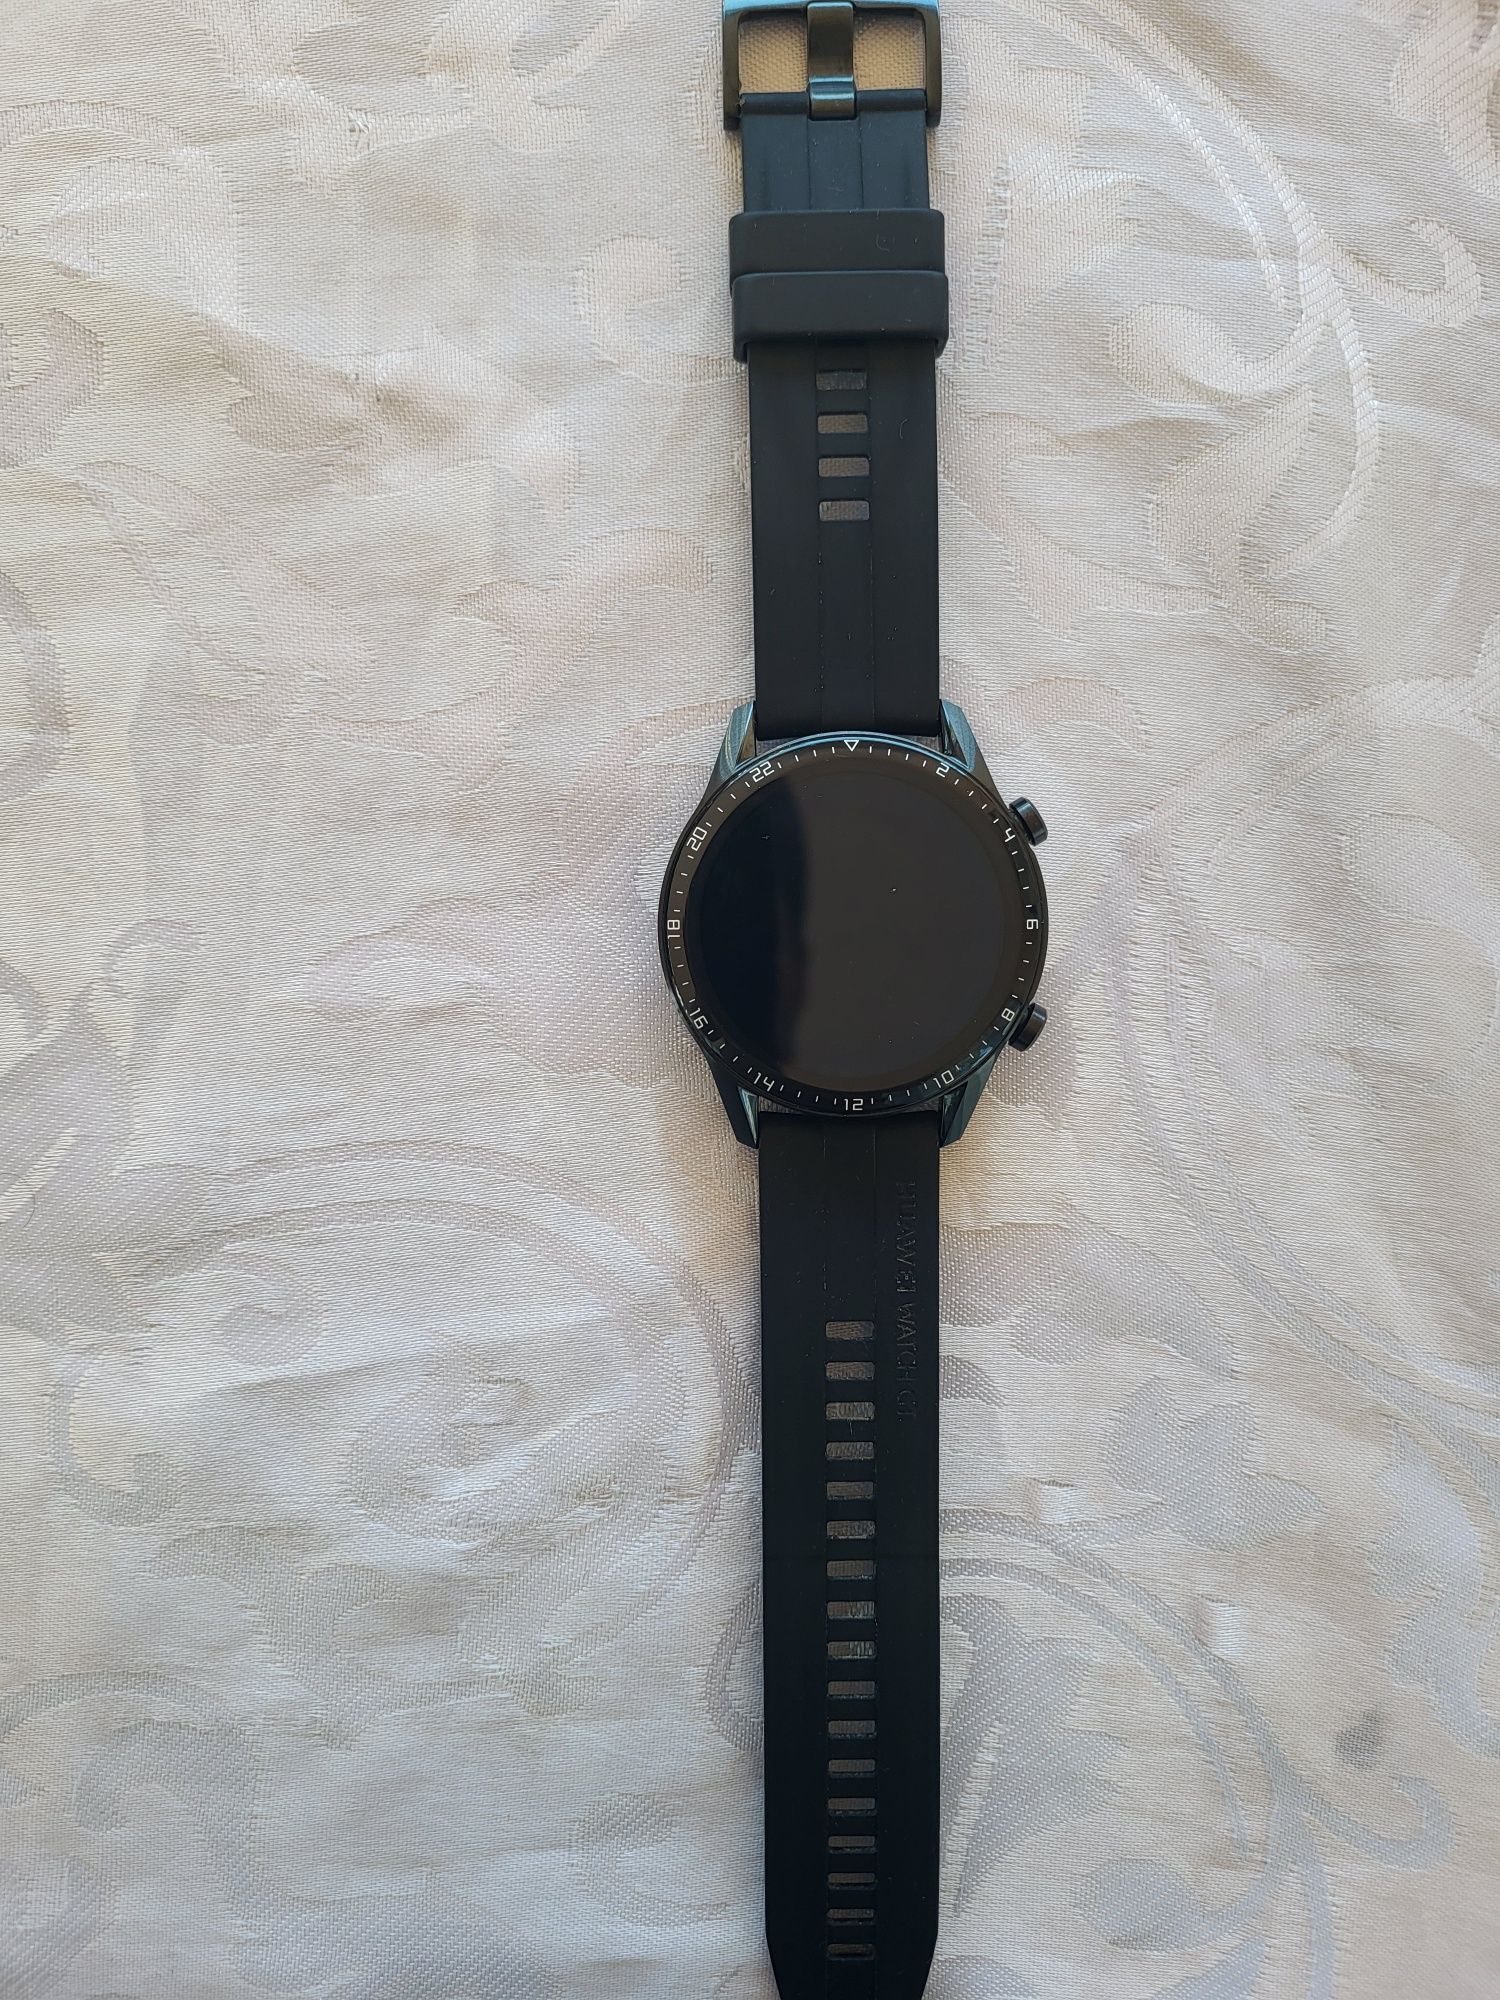 Smartwatch Huawei watch gt 2